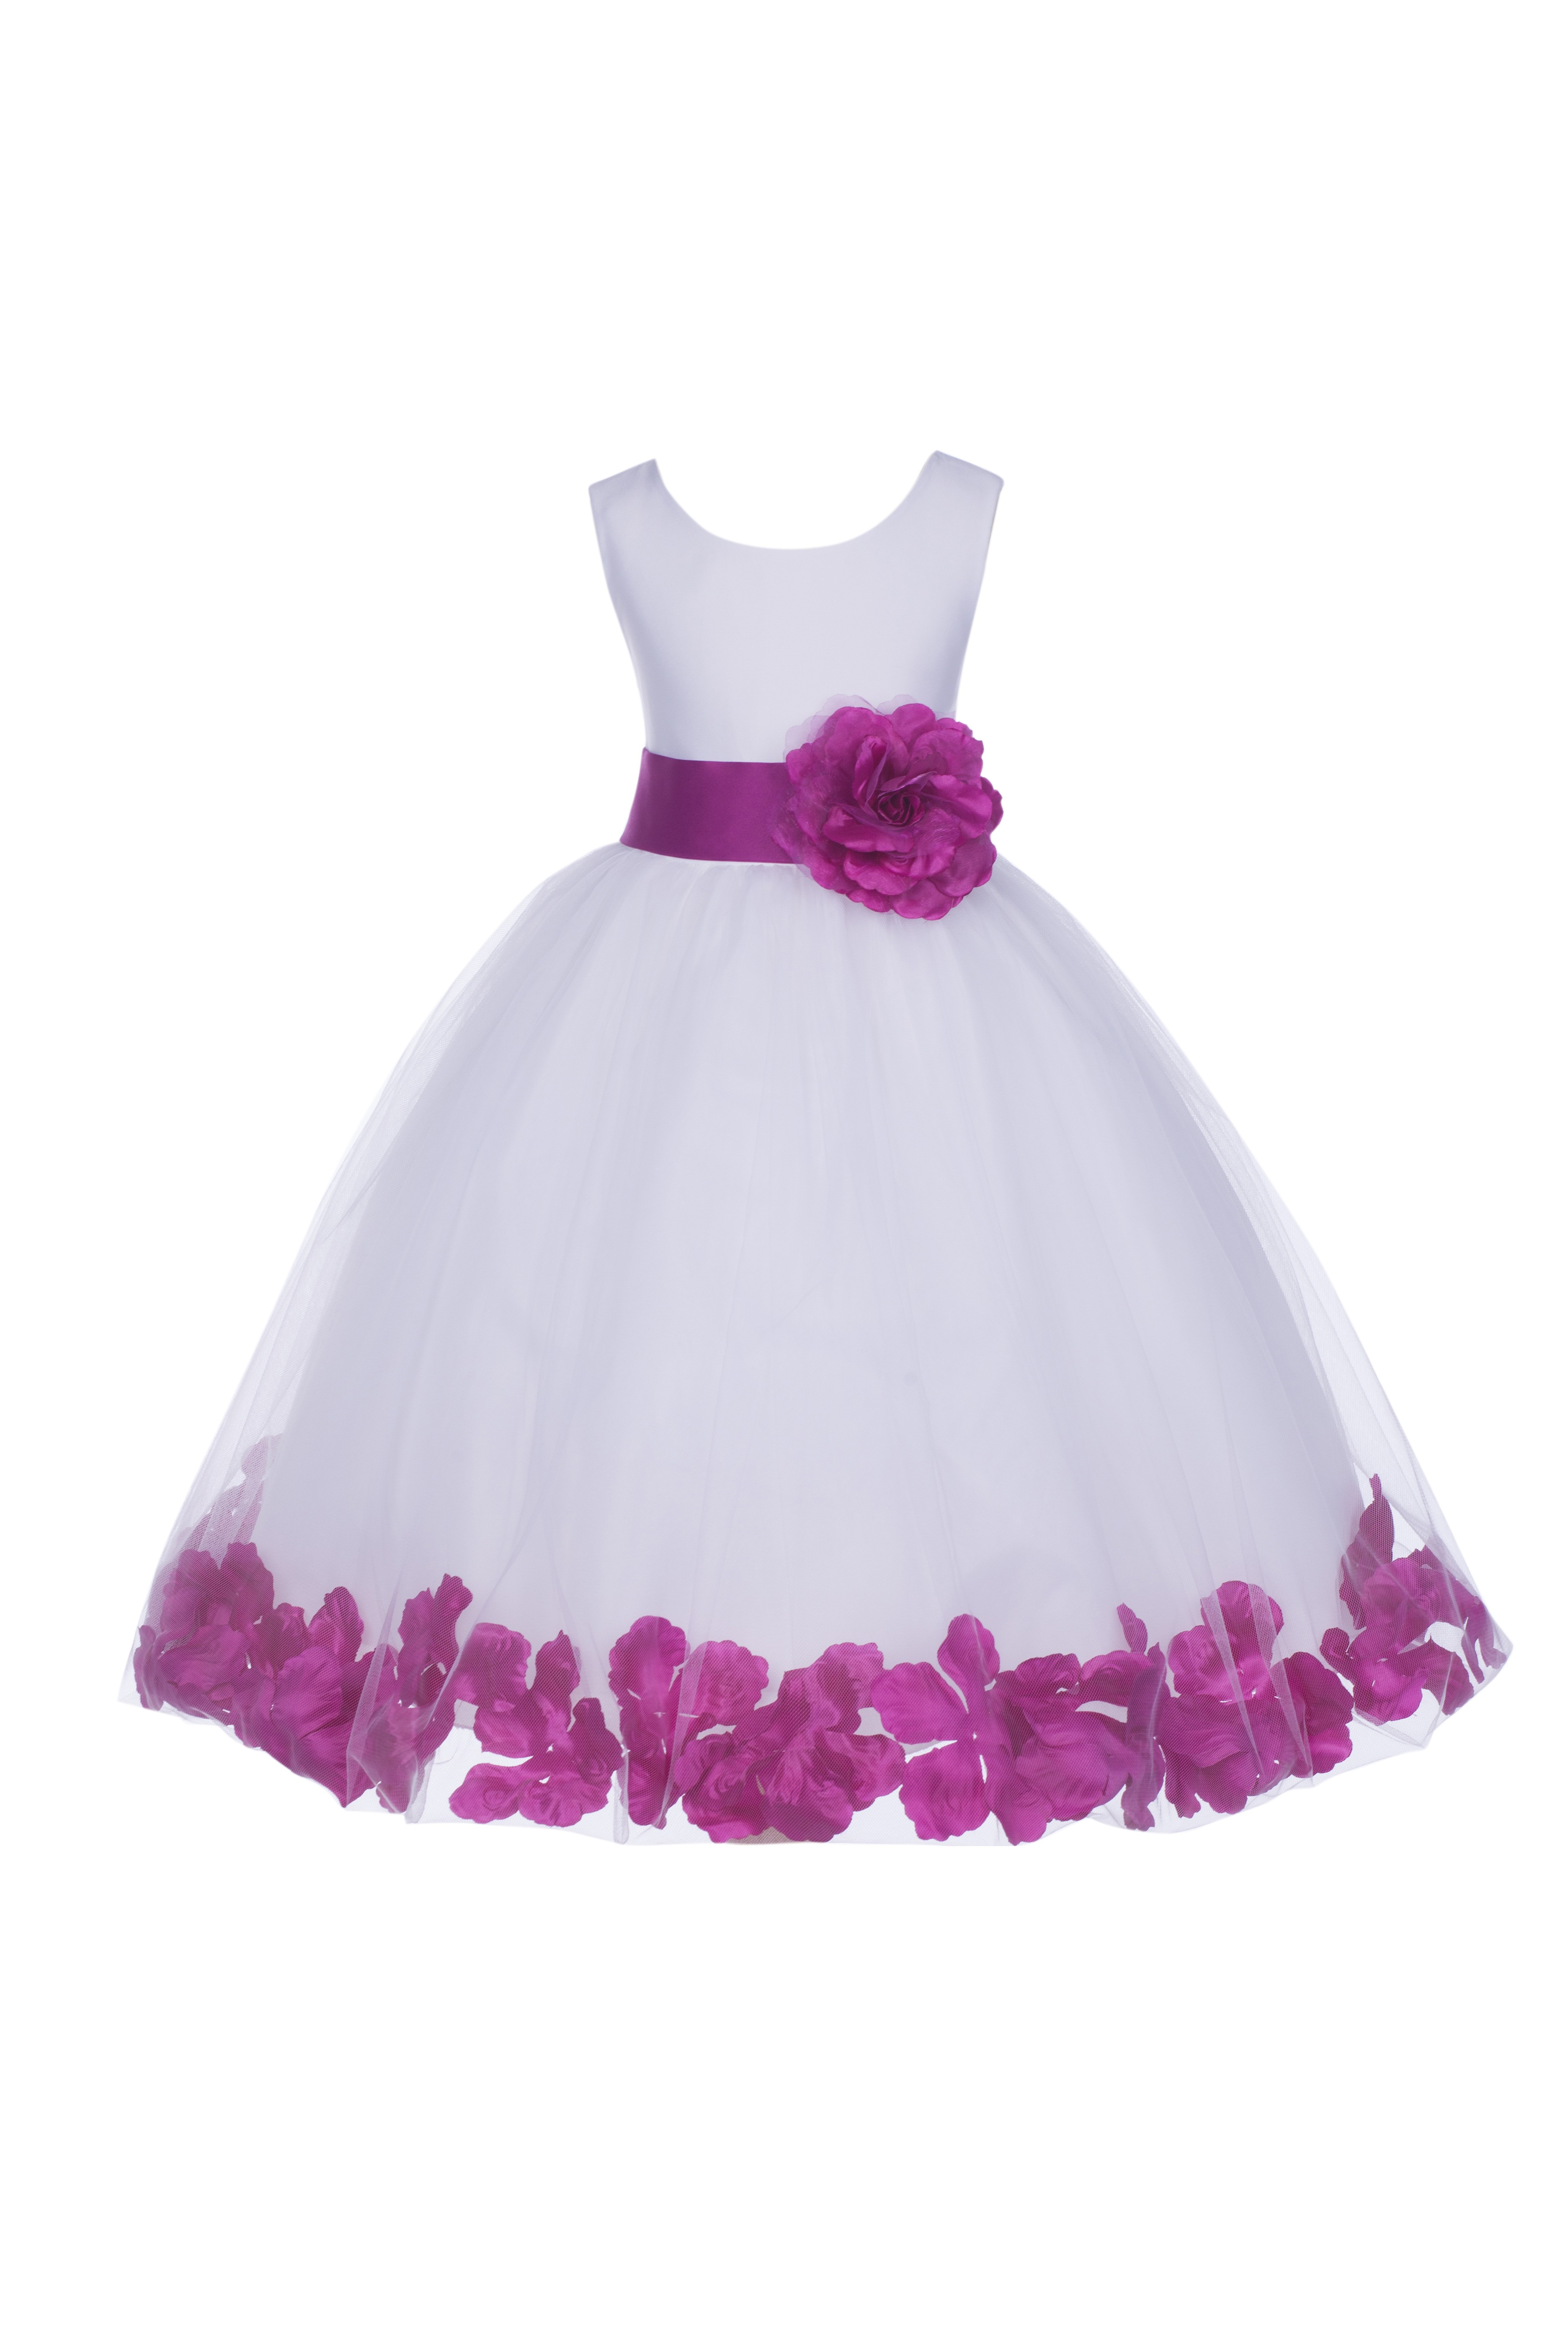 White/Raspberry Tulle Rose Petals Flower Girl Dress Wedding 302T